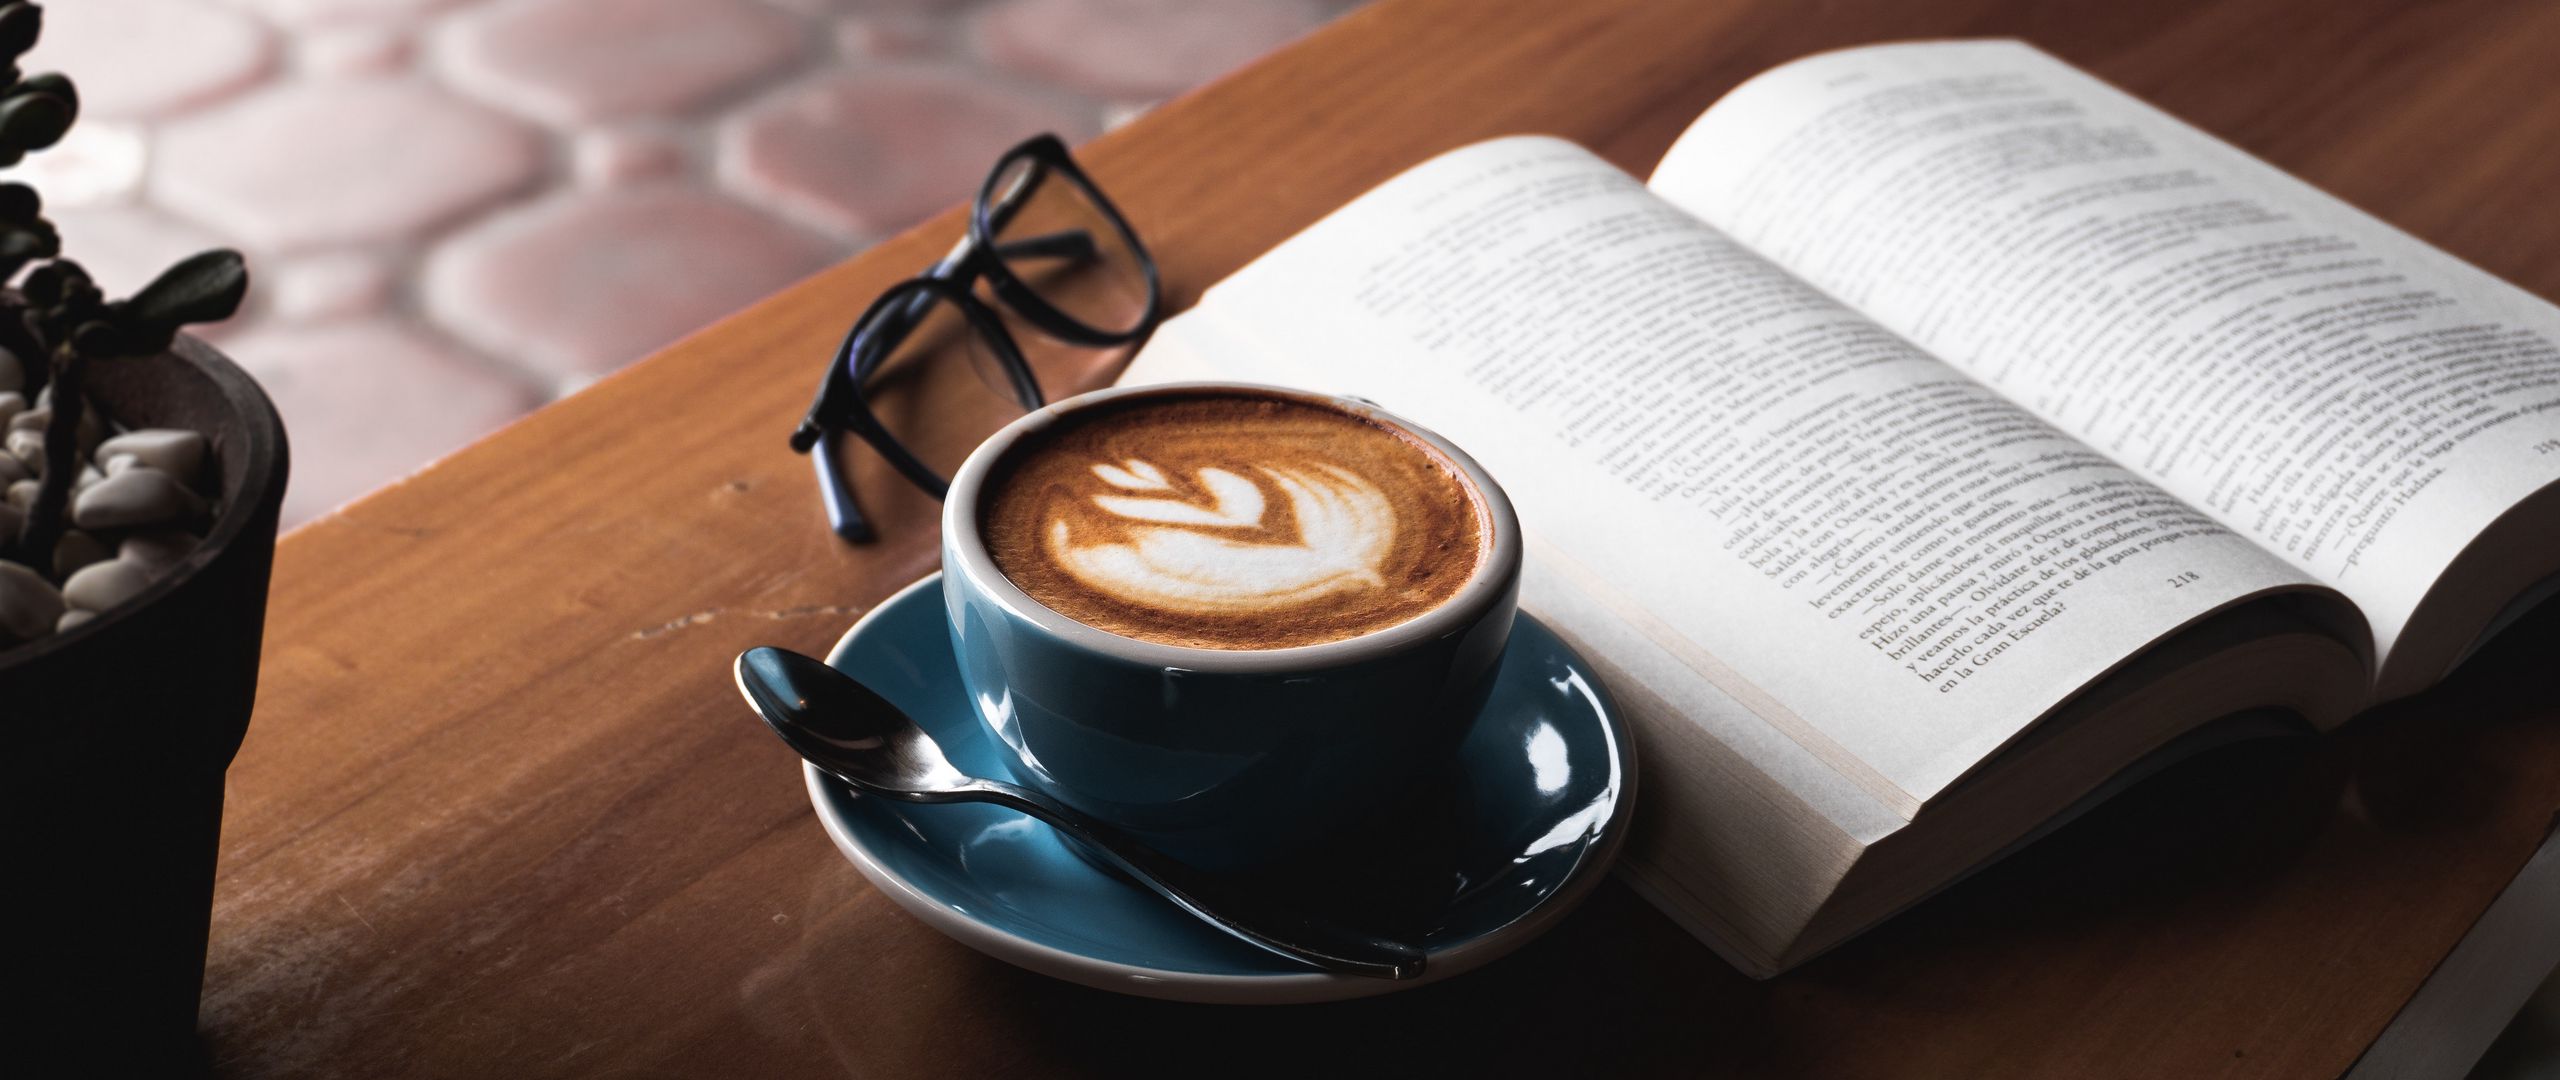 За чашечкой кофе на дзен читать рассказы. Книга о кофе. Кофе на столе. Книга и кофе на столе. Чашка кофе и книга.